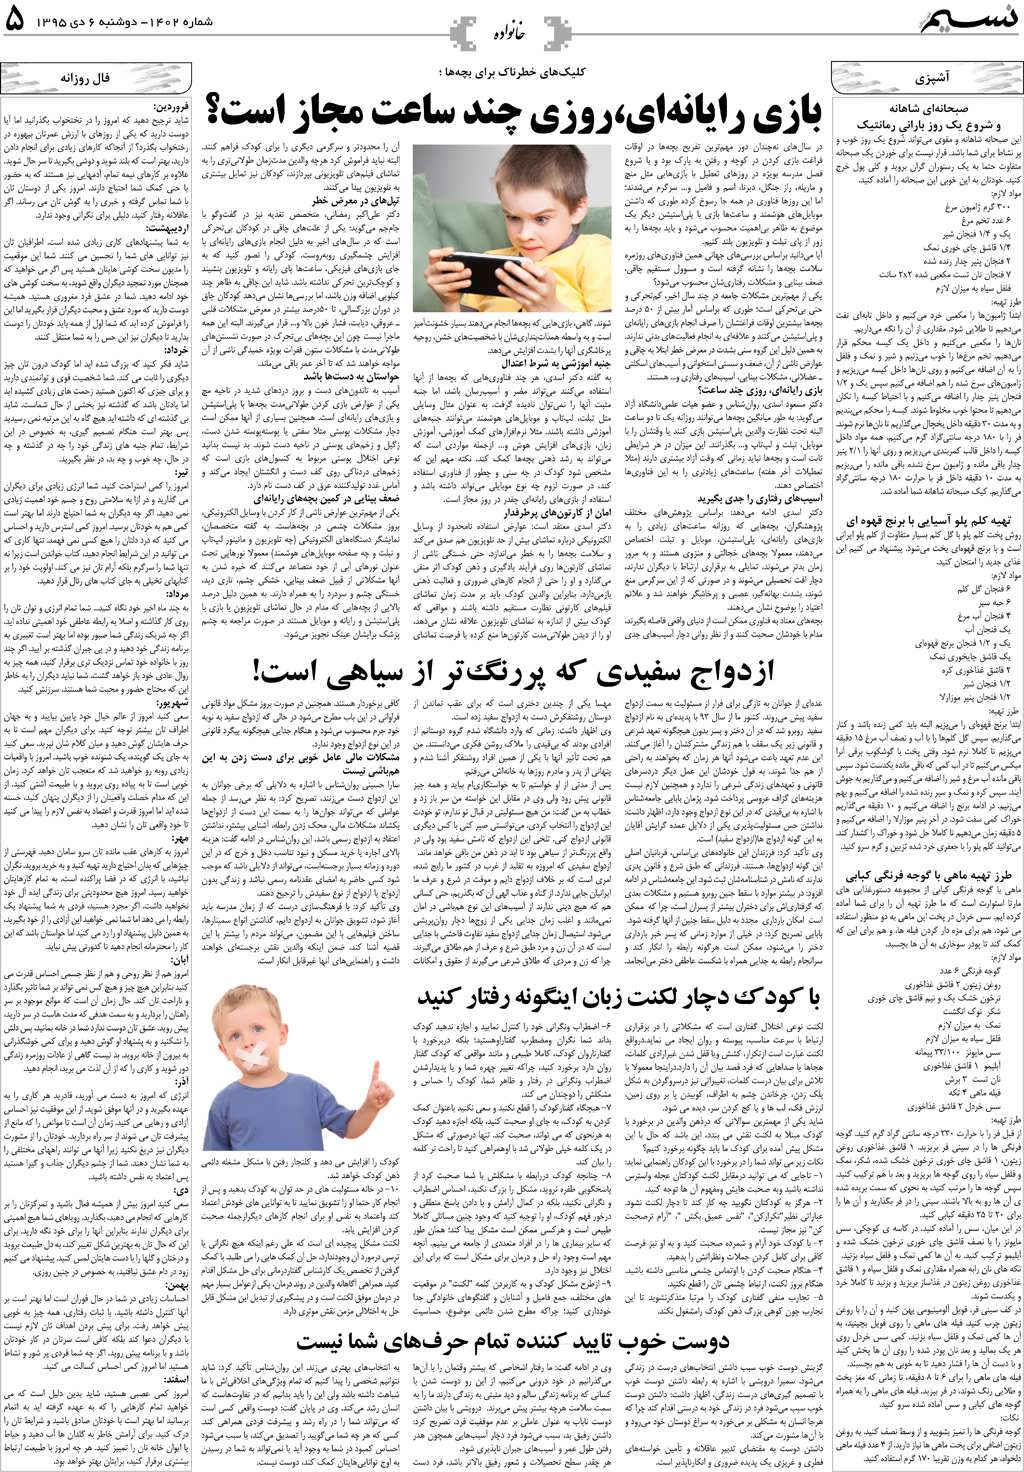 صفحه خانواده روزنامه نسیم شماره 1402